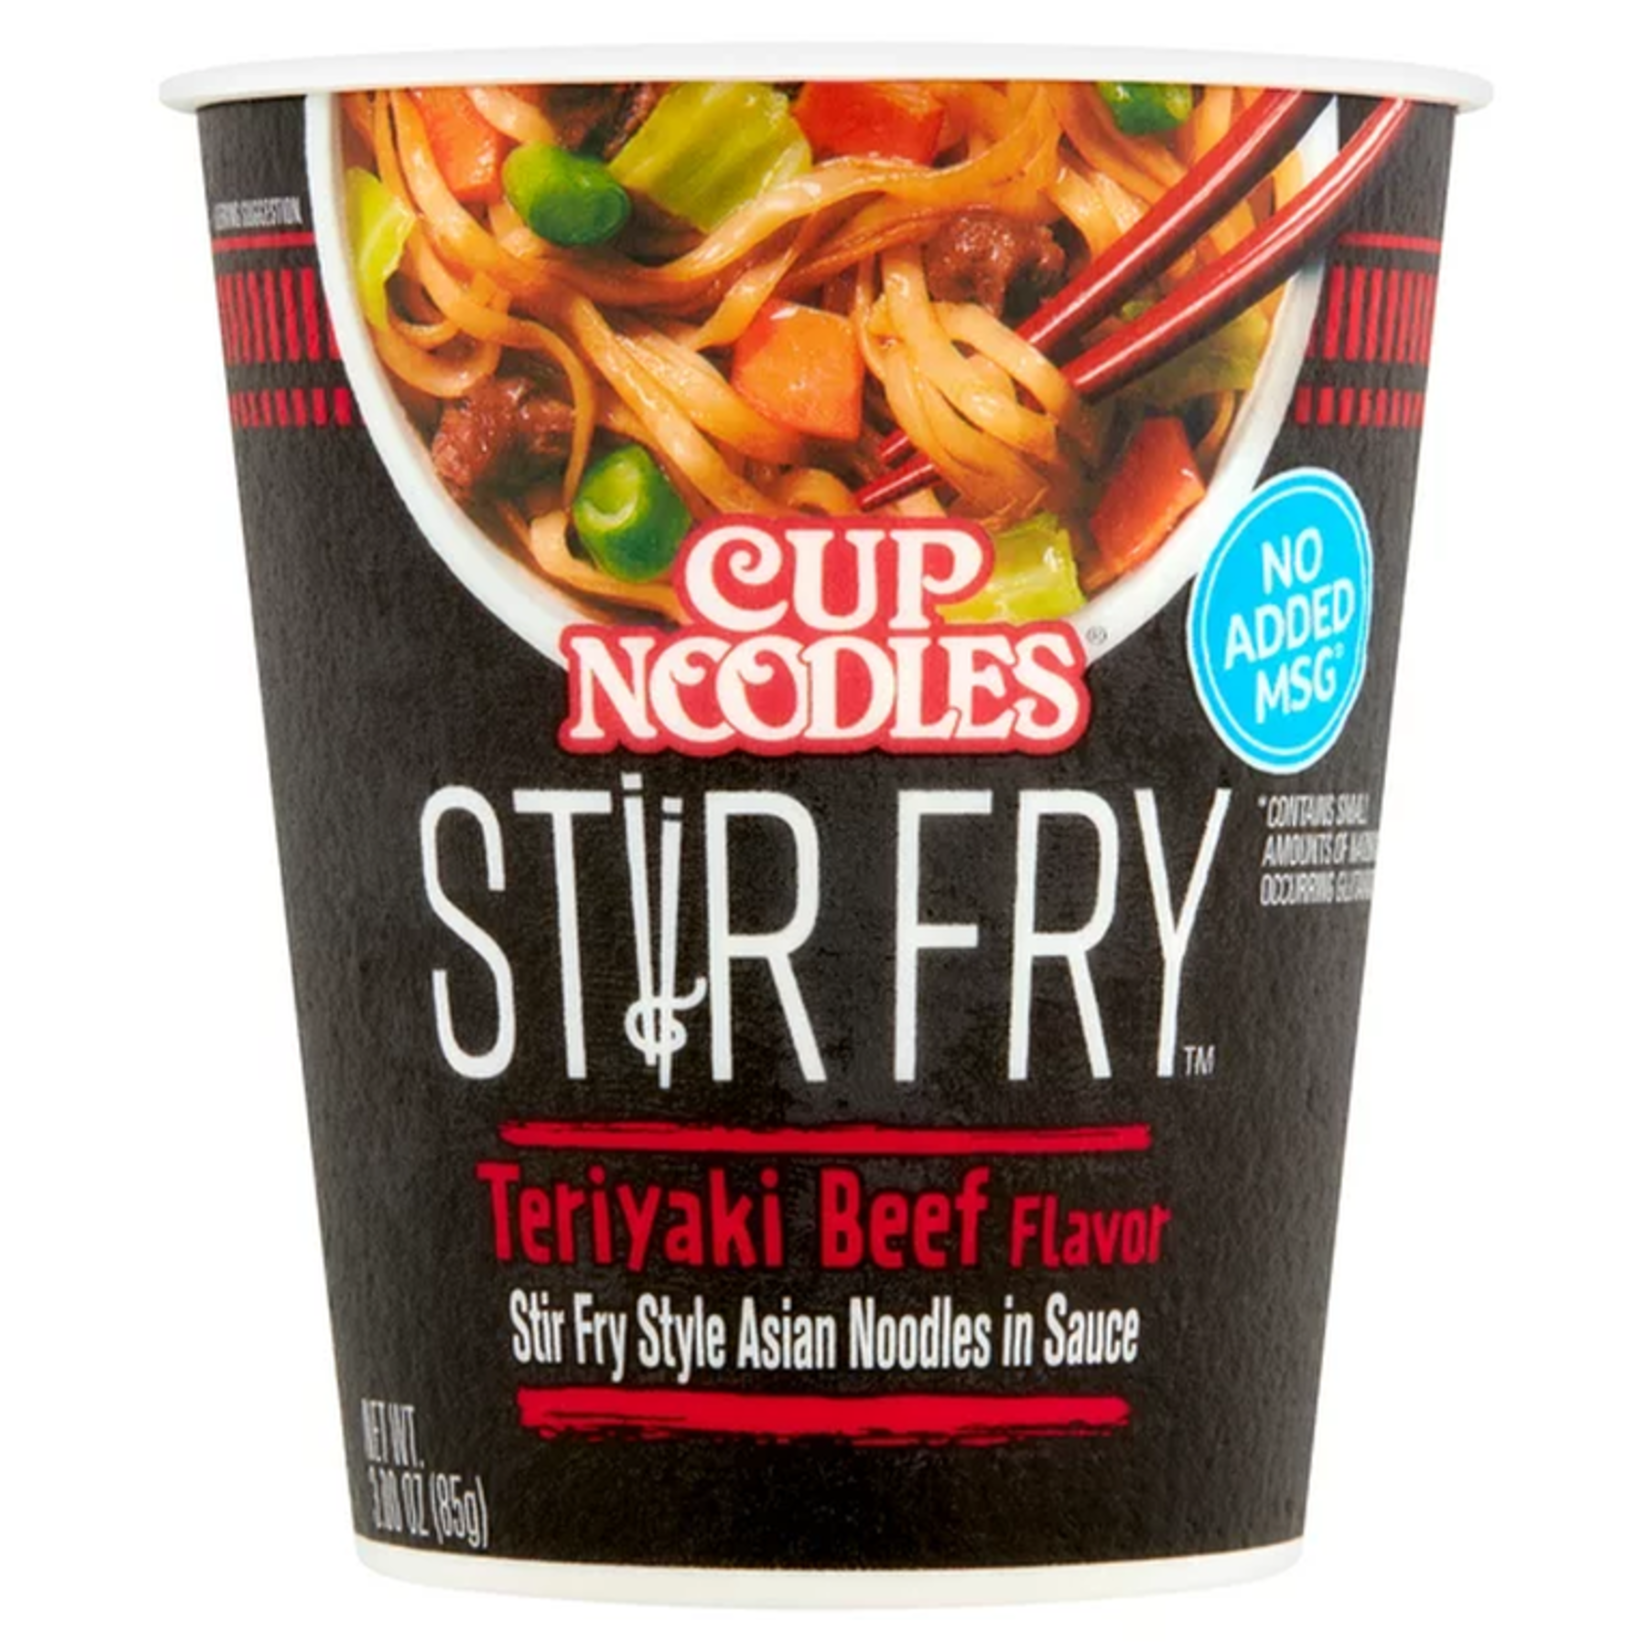 Nissin Cup Noodle - Stir Fry Teriyaki Beef 3.00oz